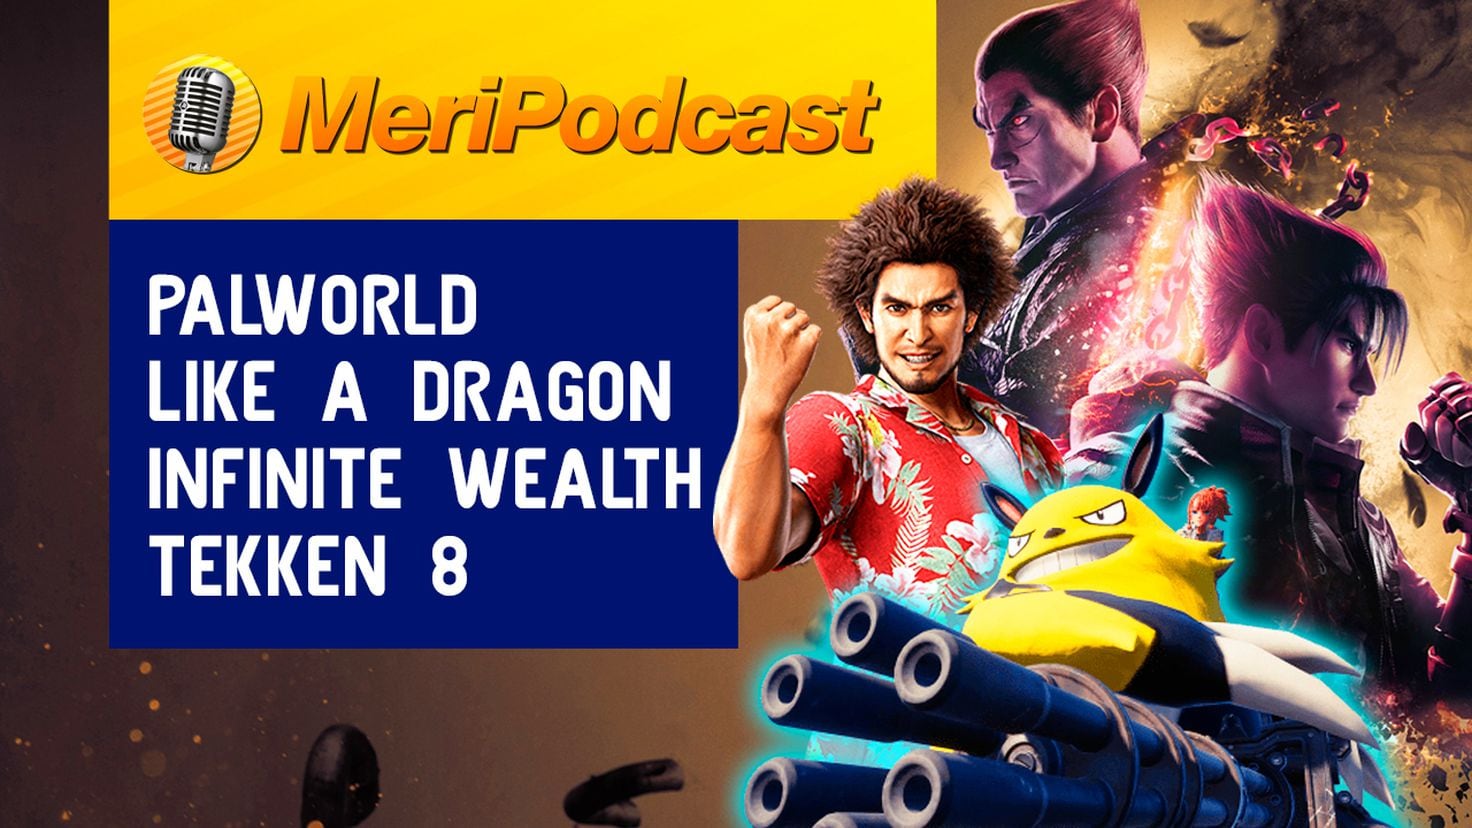 Wesołych podcastów 17×18 |  Plagiat, Sukces Palworld, Wydarzenie Xbox, Tekken 8, Nieskończone bogactwo Like a Dragon